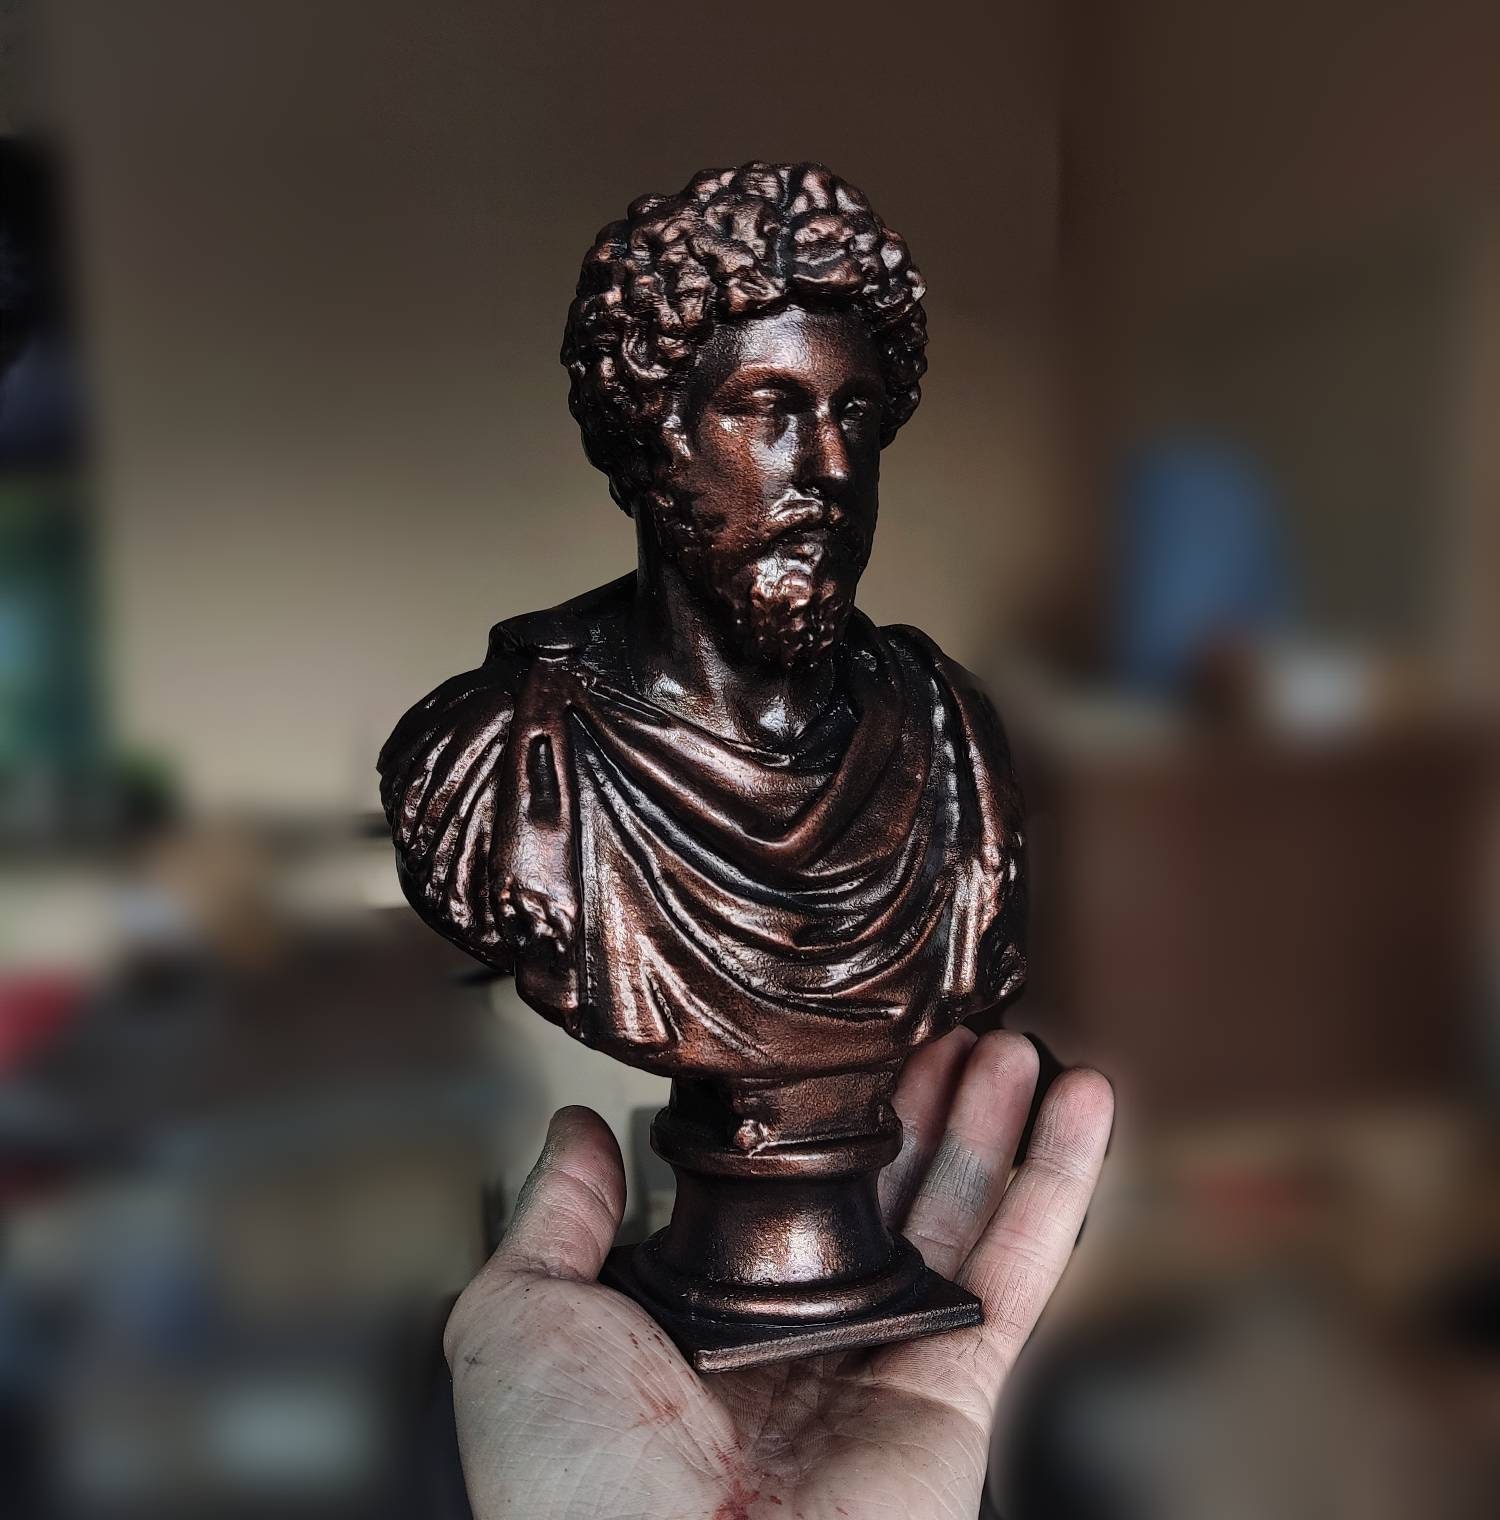 Marco Aurelio busto imperatore romano meditazioni stoicismo statuina stoica  statua statuetta ispirazione ispiratrice -  Italia